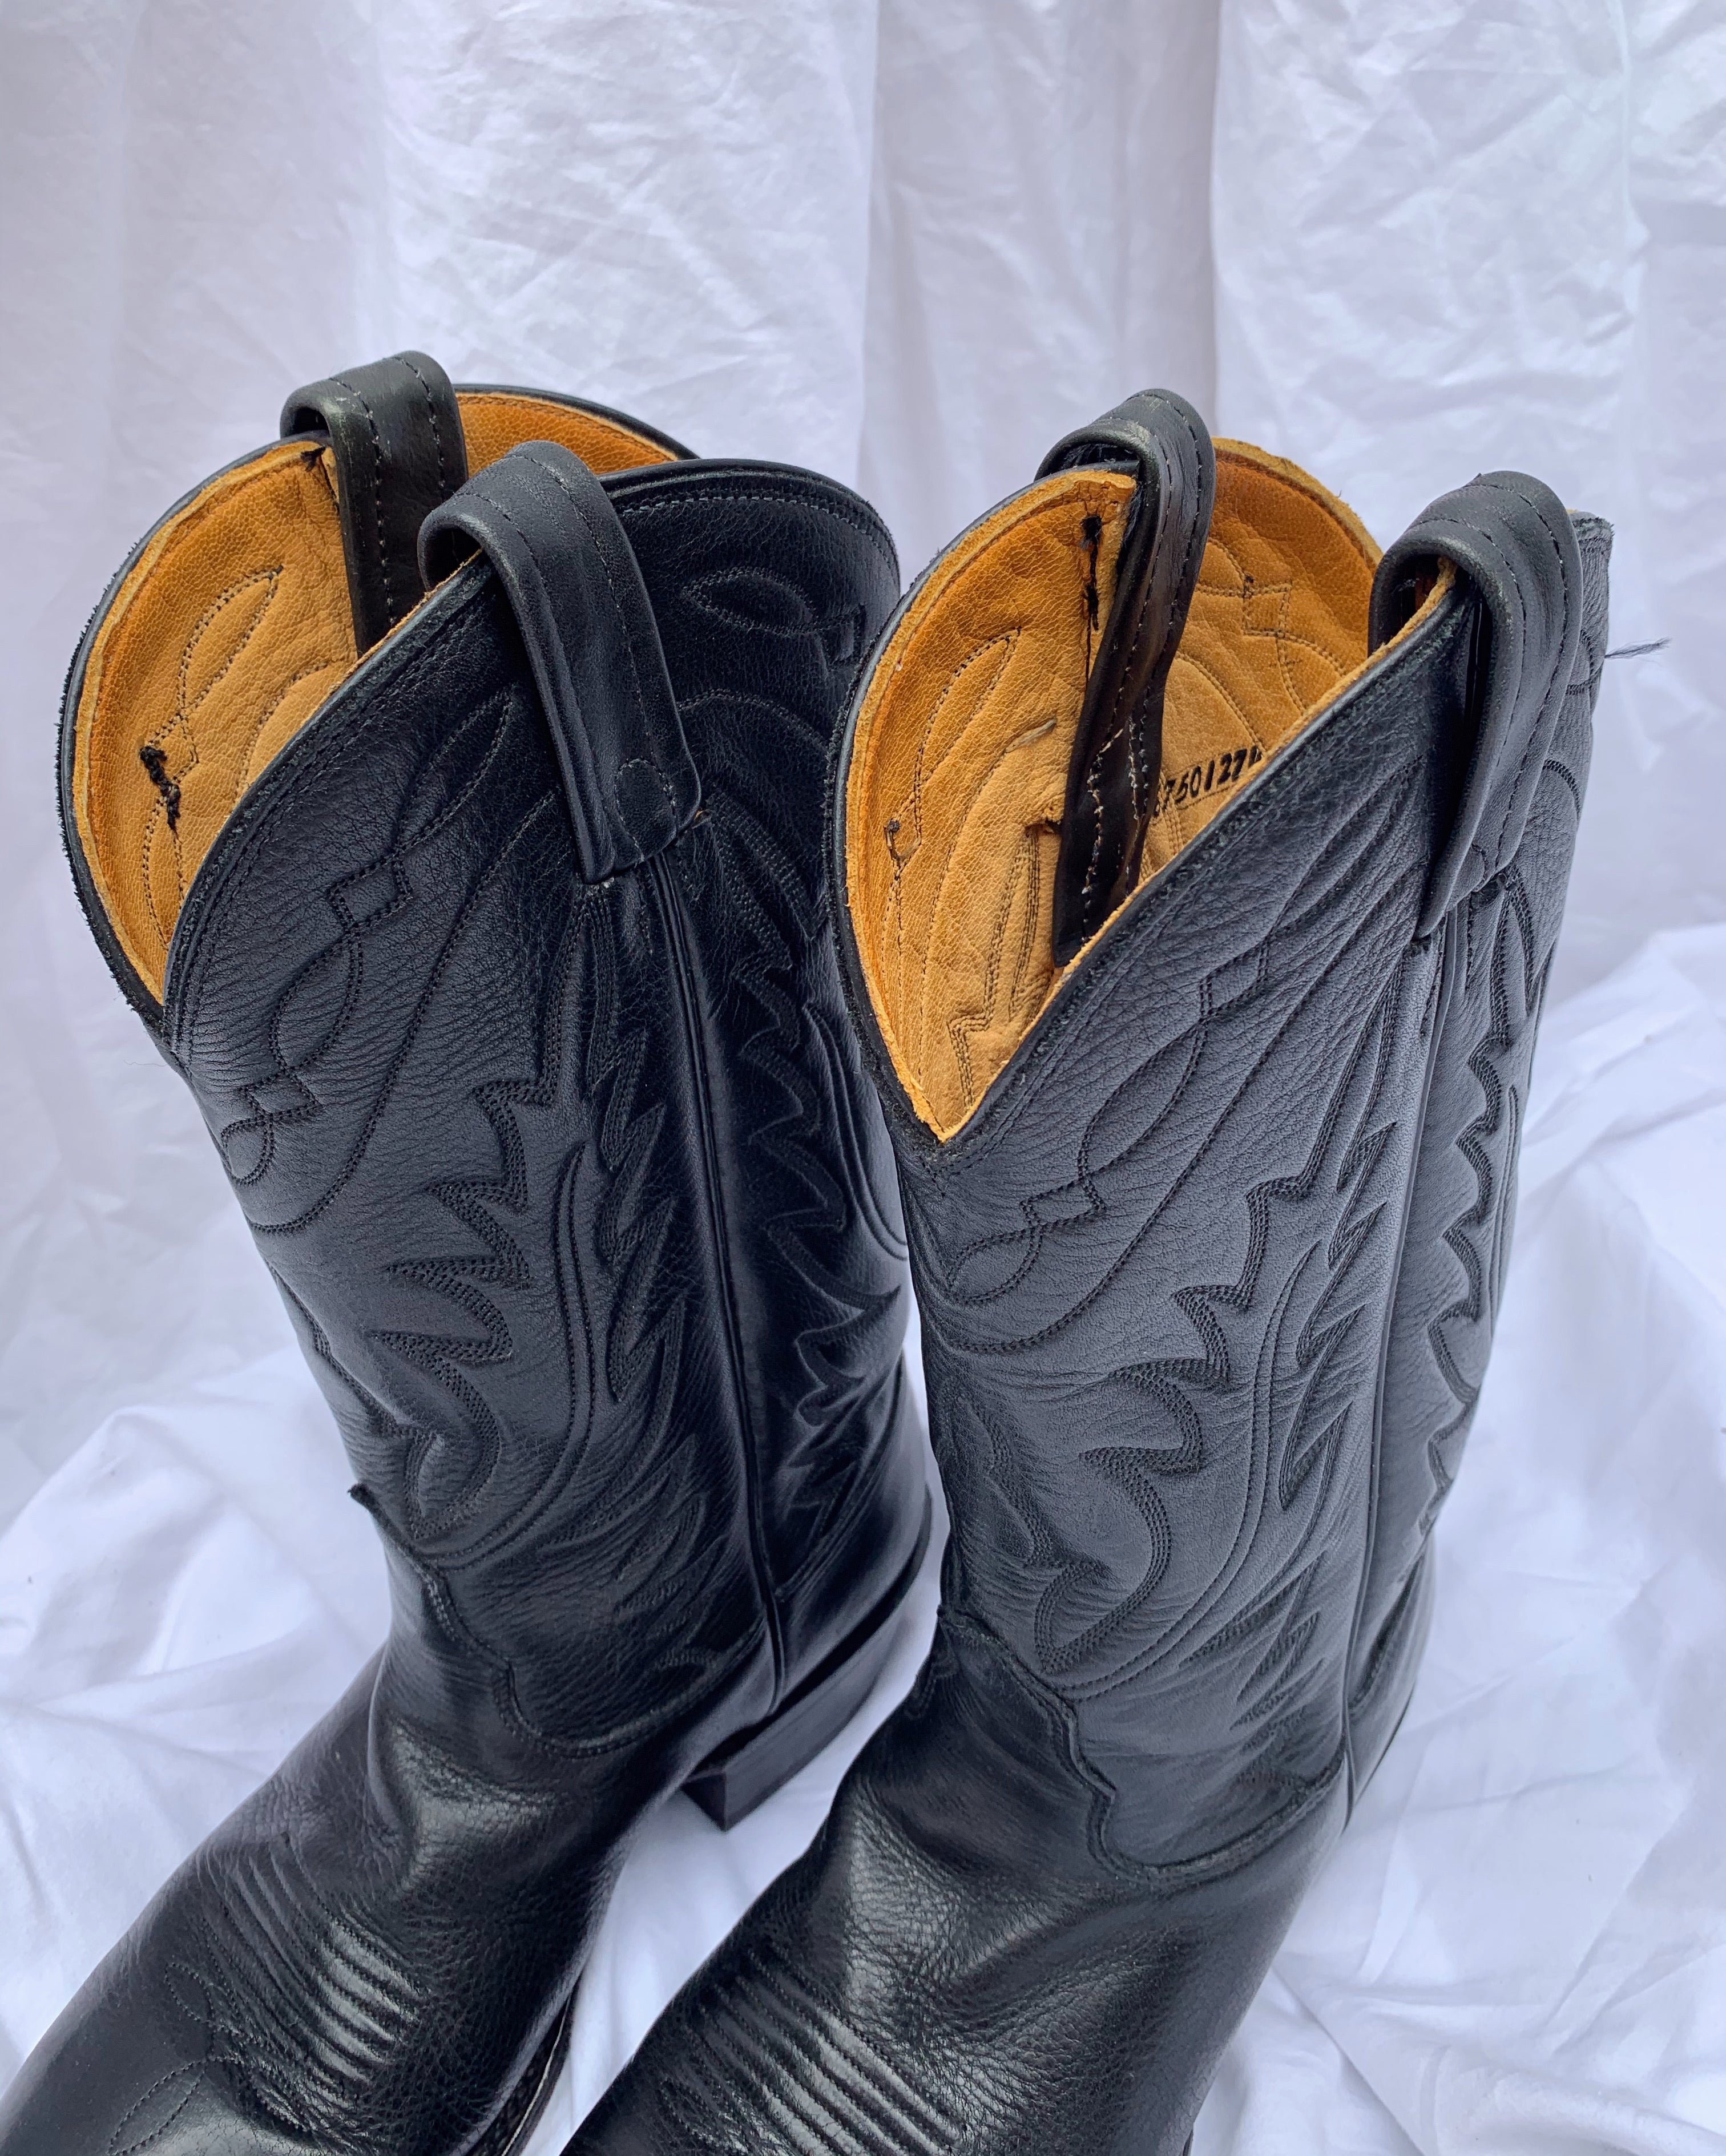 Size 8 Cowboy Boots